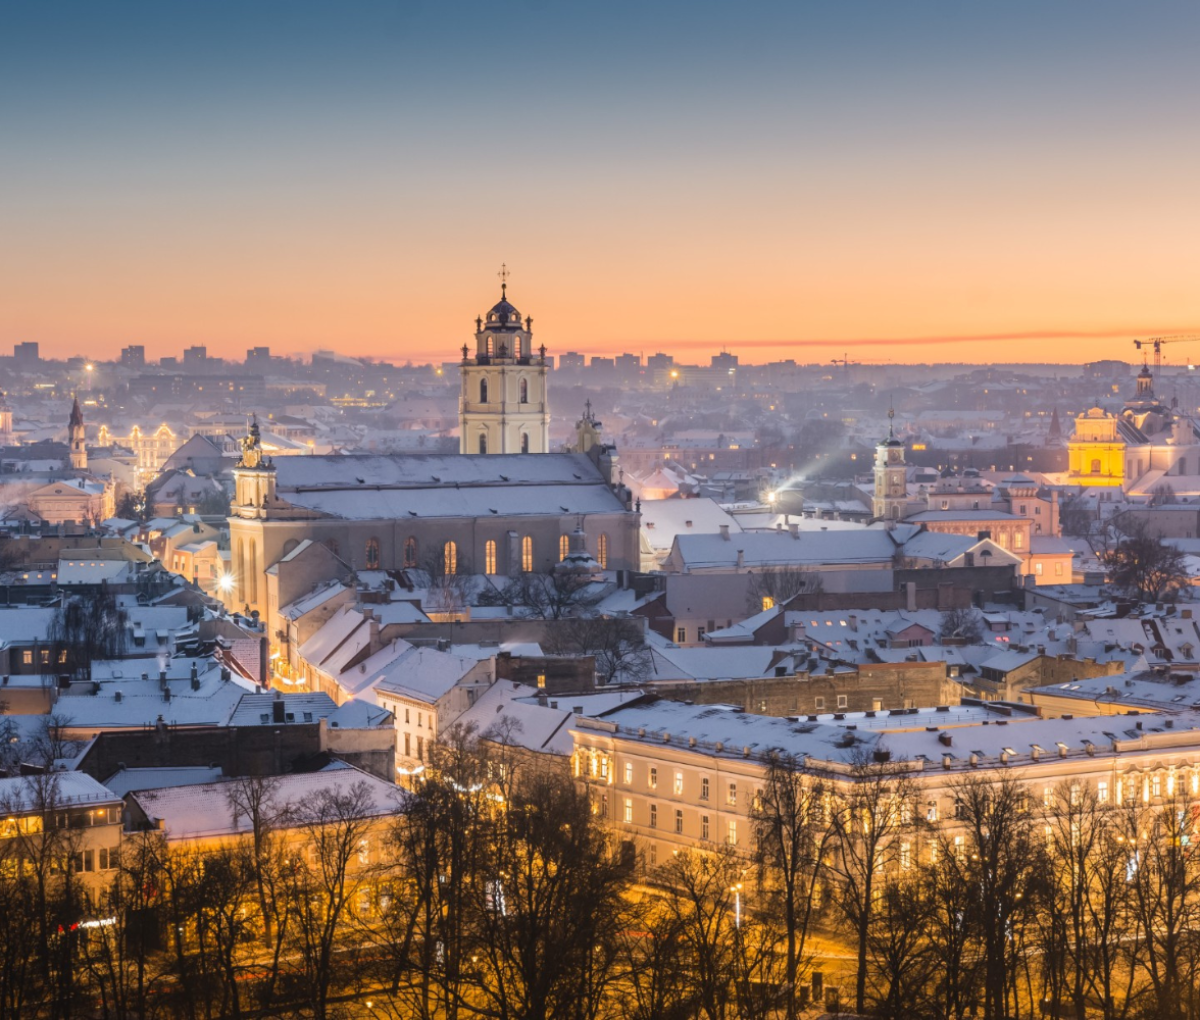 Winter sunset in Vilnius, Lithuania